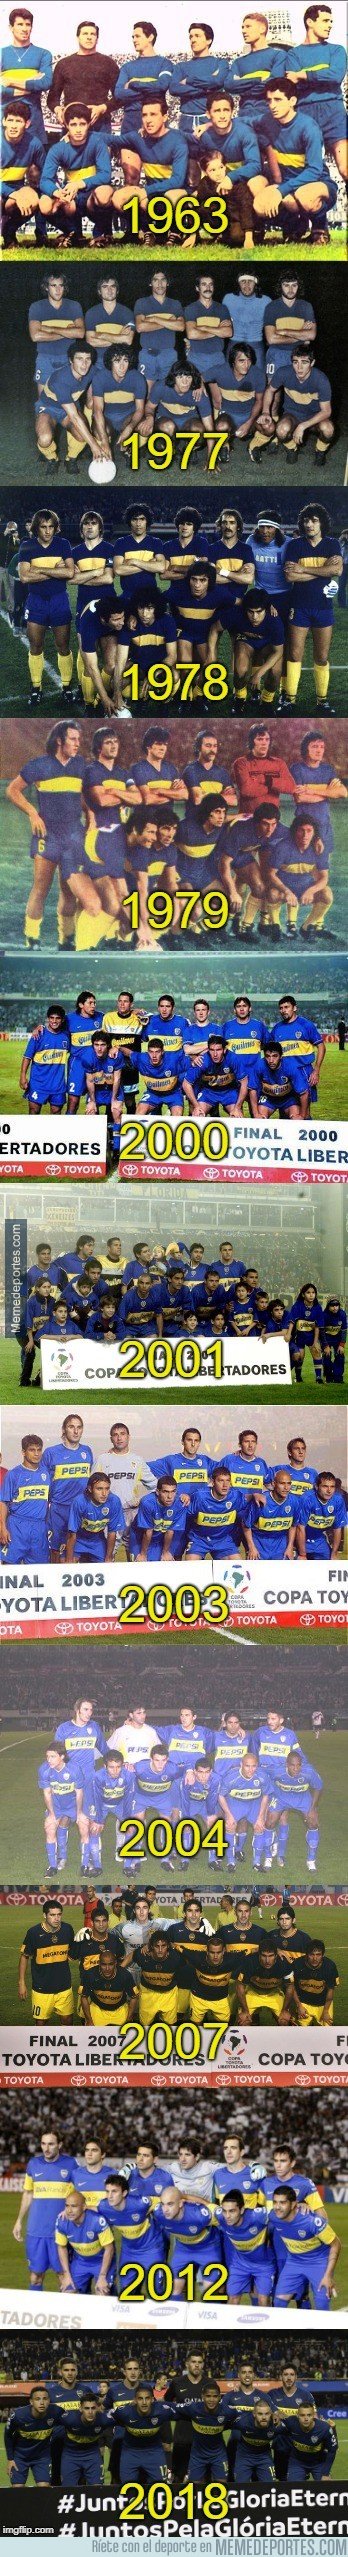 1055104 - Boca Juniors es oficialmente el club con más finales de Copa Libertadores.